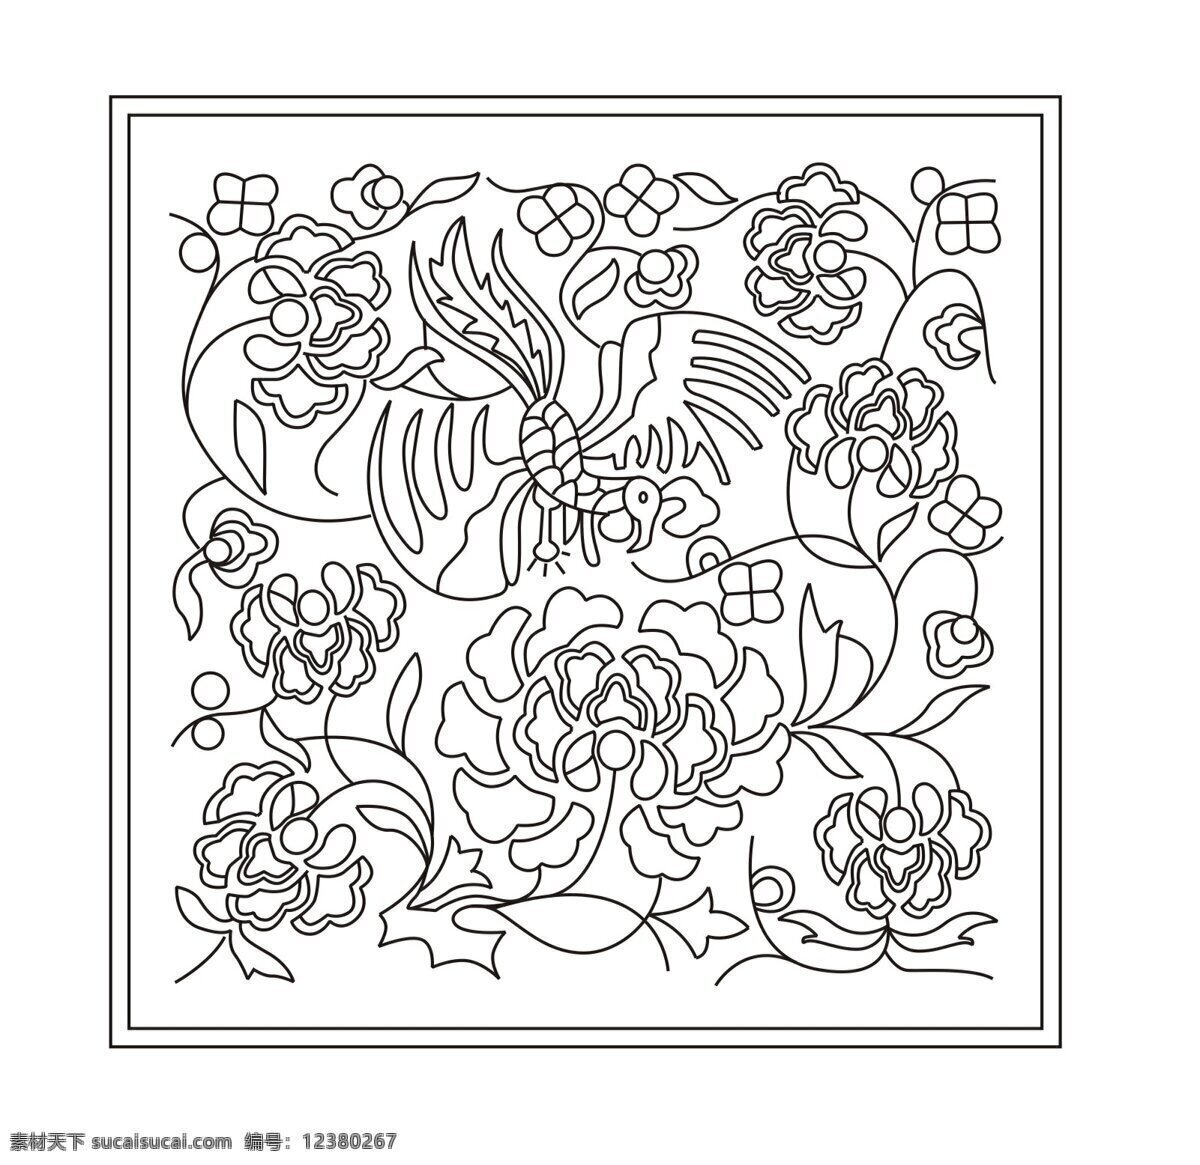 传统 花卉 图案 线 稿 传统文化图片 设计图 文化艺术